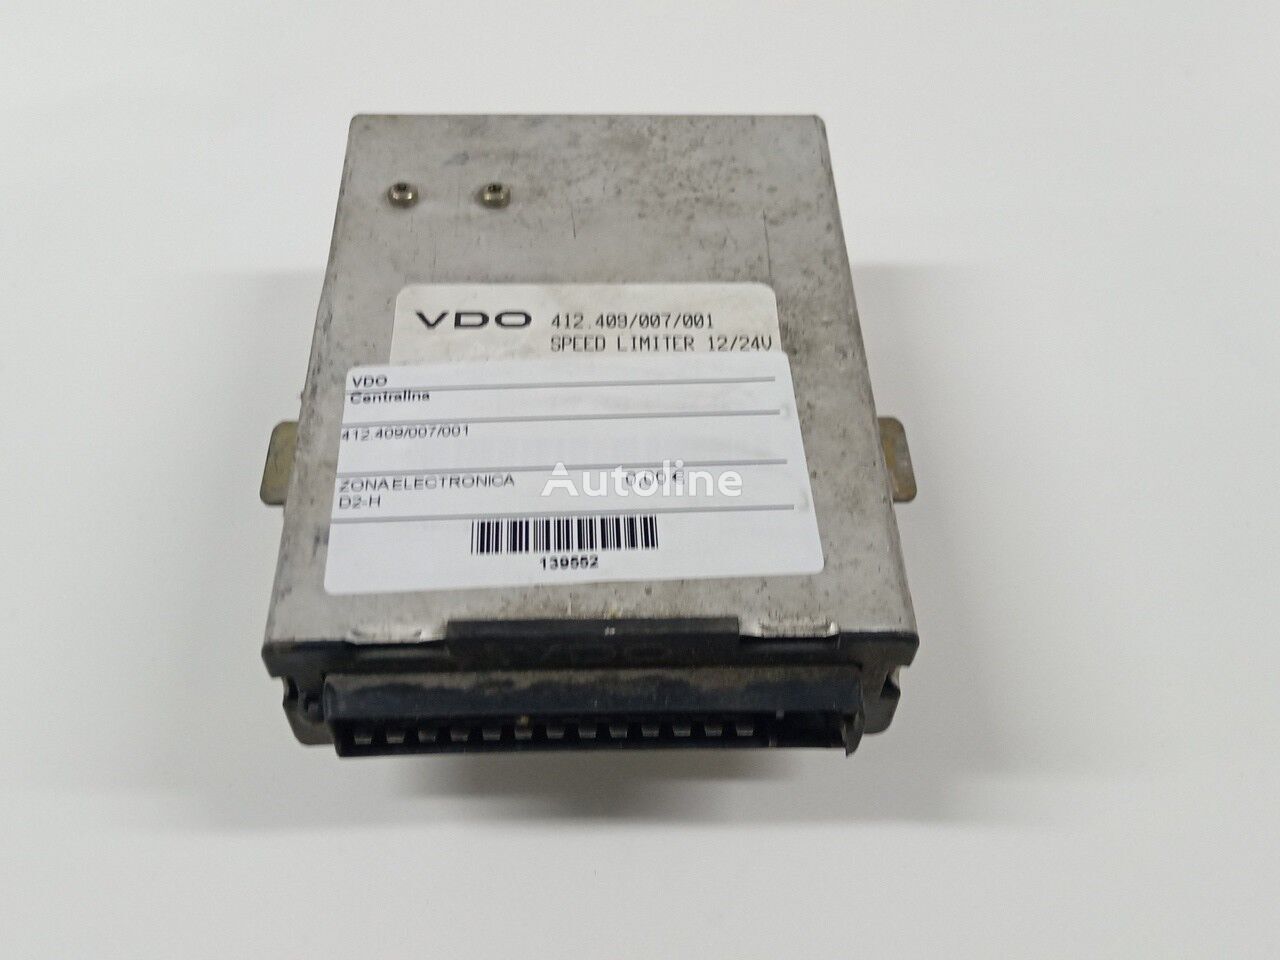 وحدة التحكم VDO 412.409/007/001 لـ الشاحنات